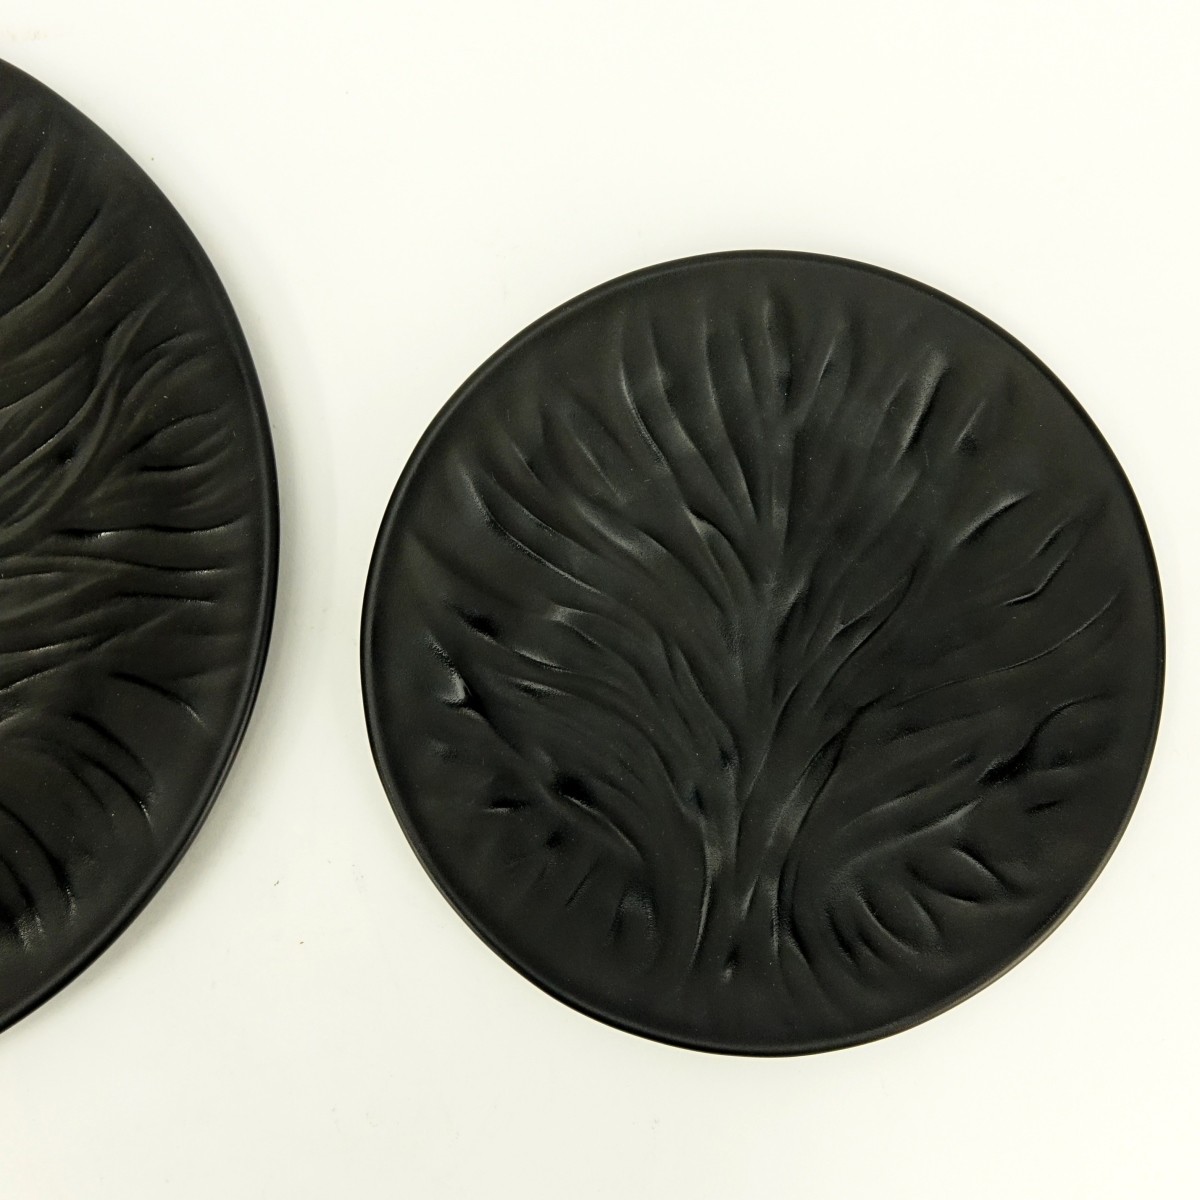 Two (2) Lalique Black Glass "Algues" Plates